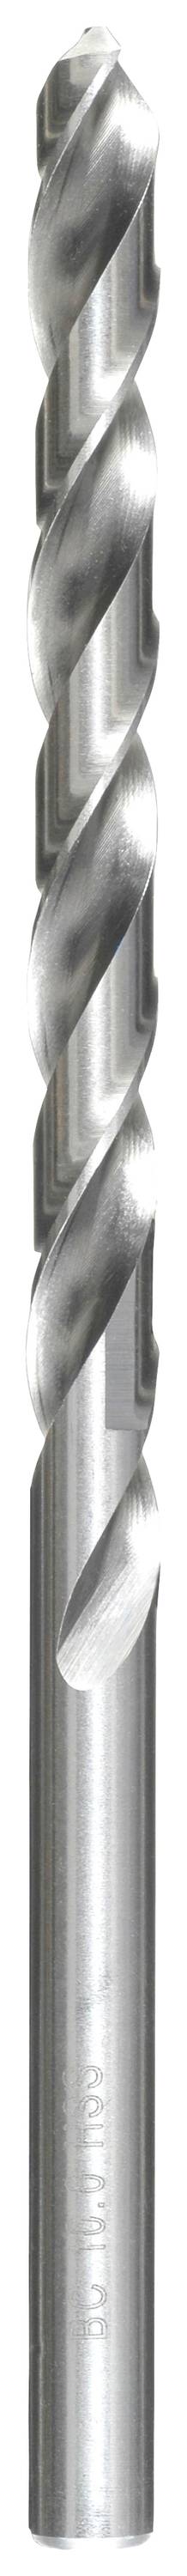 KWB 217032 HSS Spiralbohrer 1 Stück 3.2 mm Gesamtlänge 106 mm DIN 340 Zahnkranzbohrfutter 1 St.